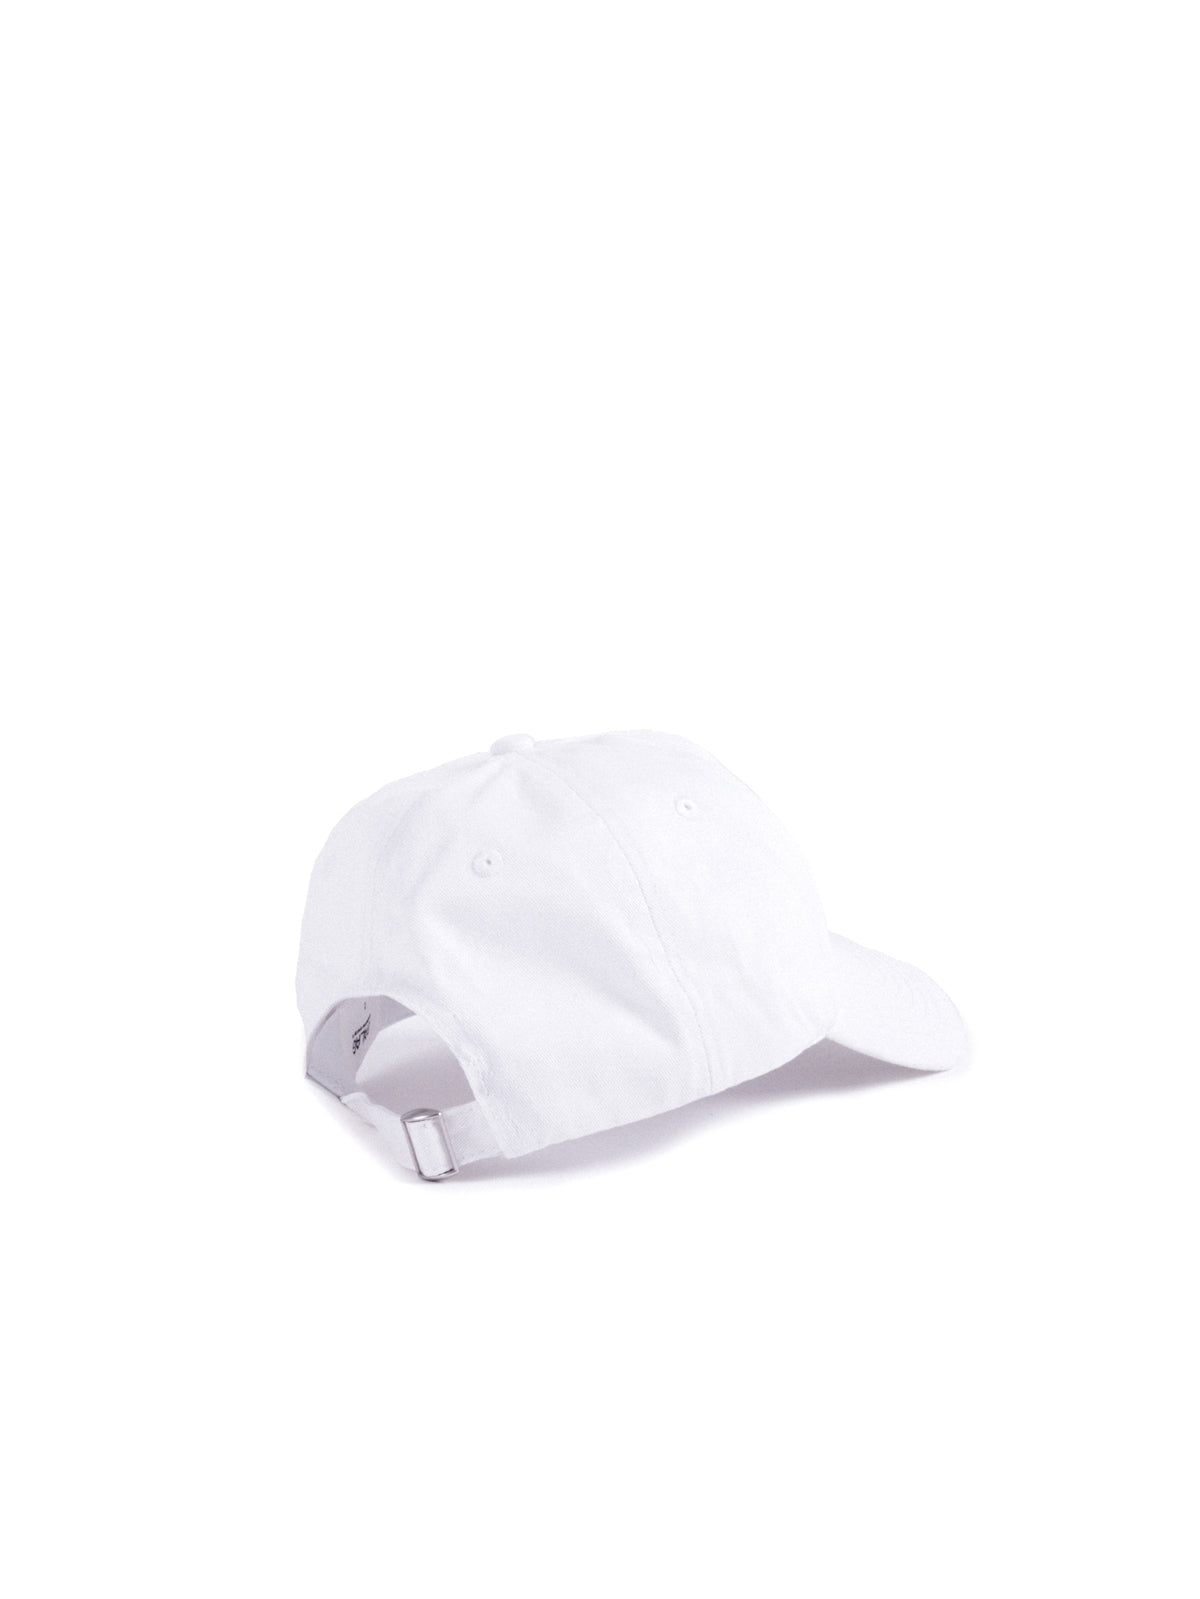 WHITE LONG STRAP HAT